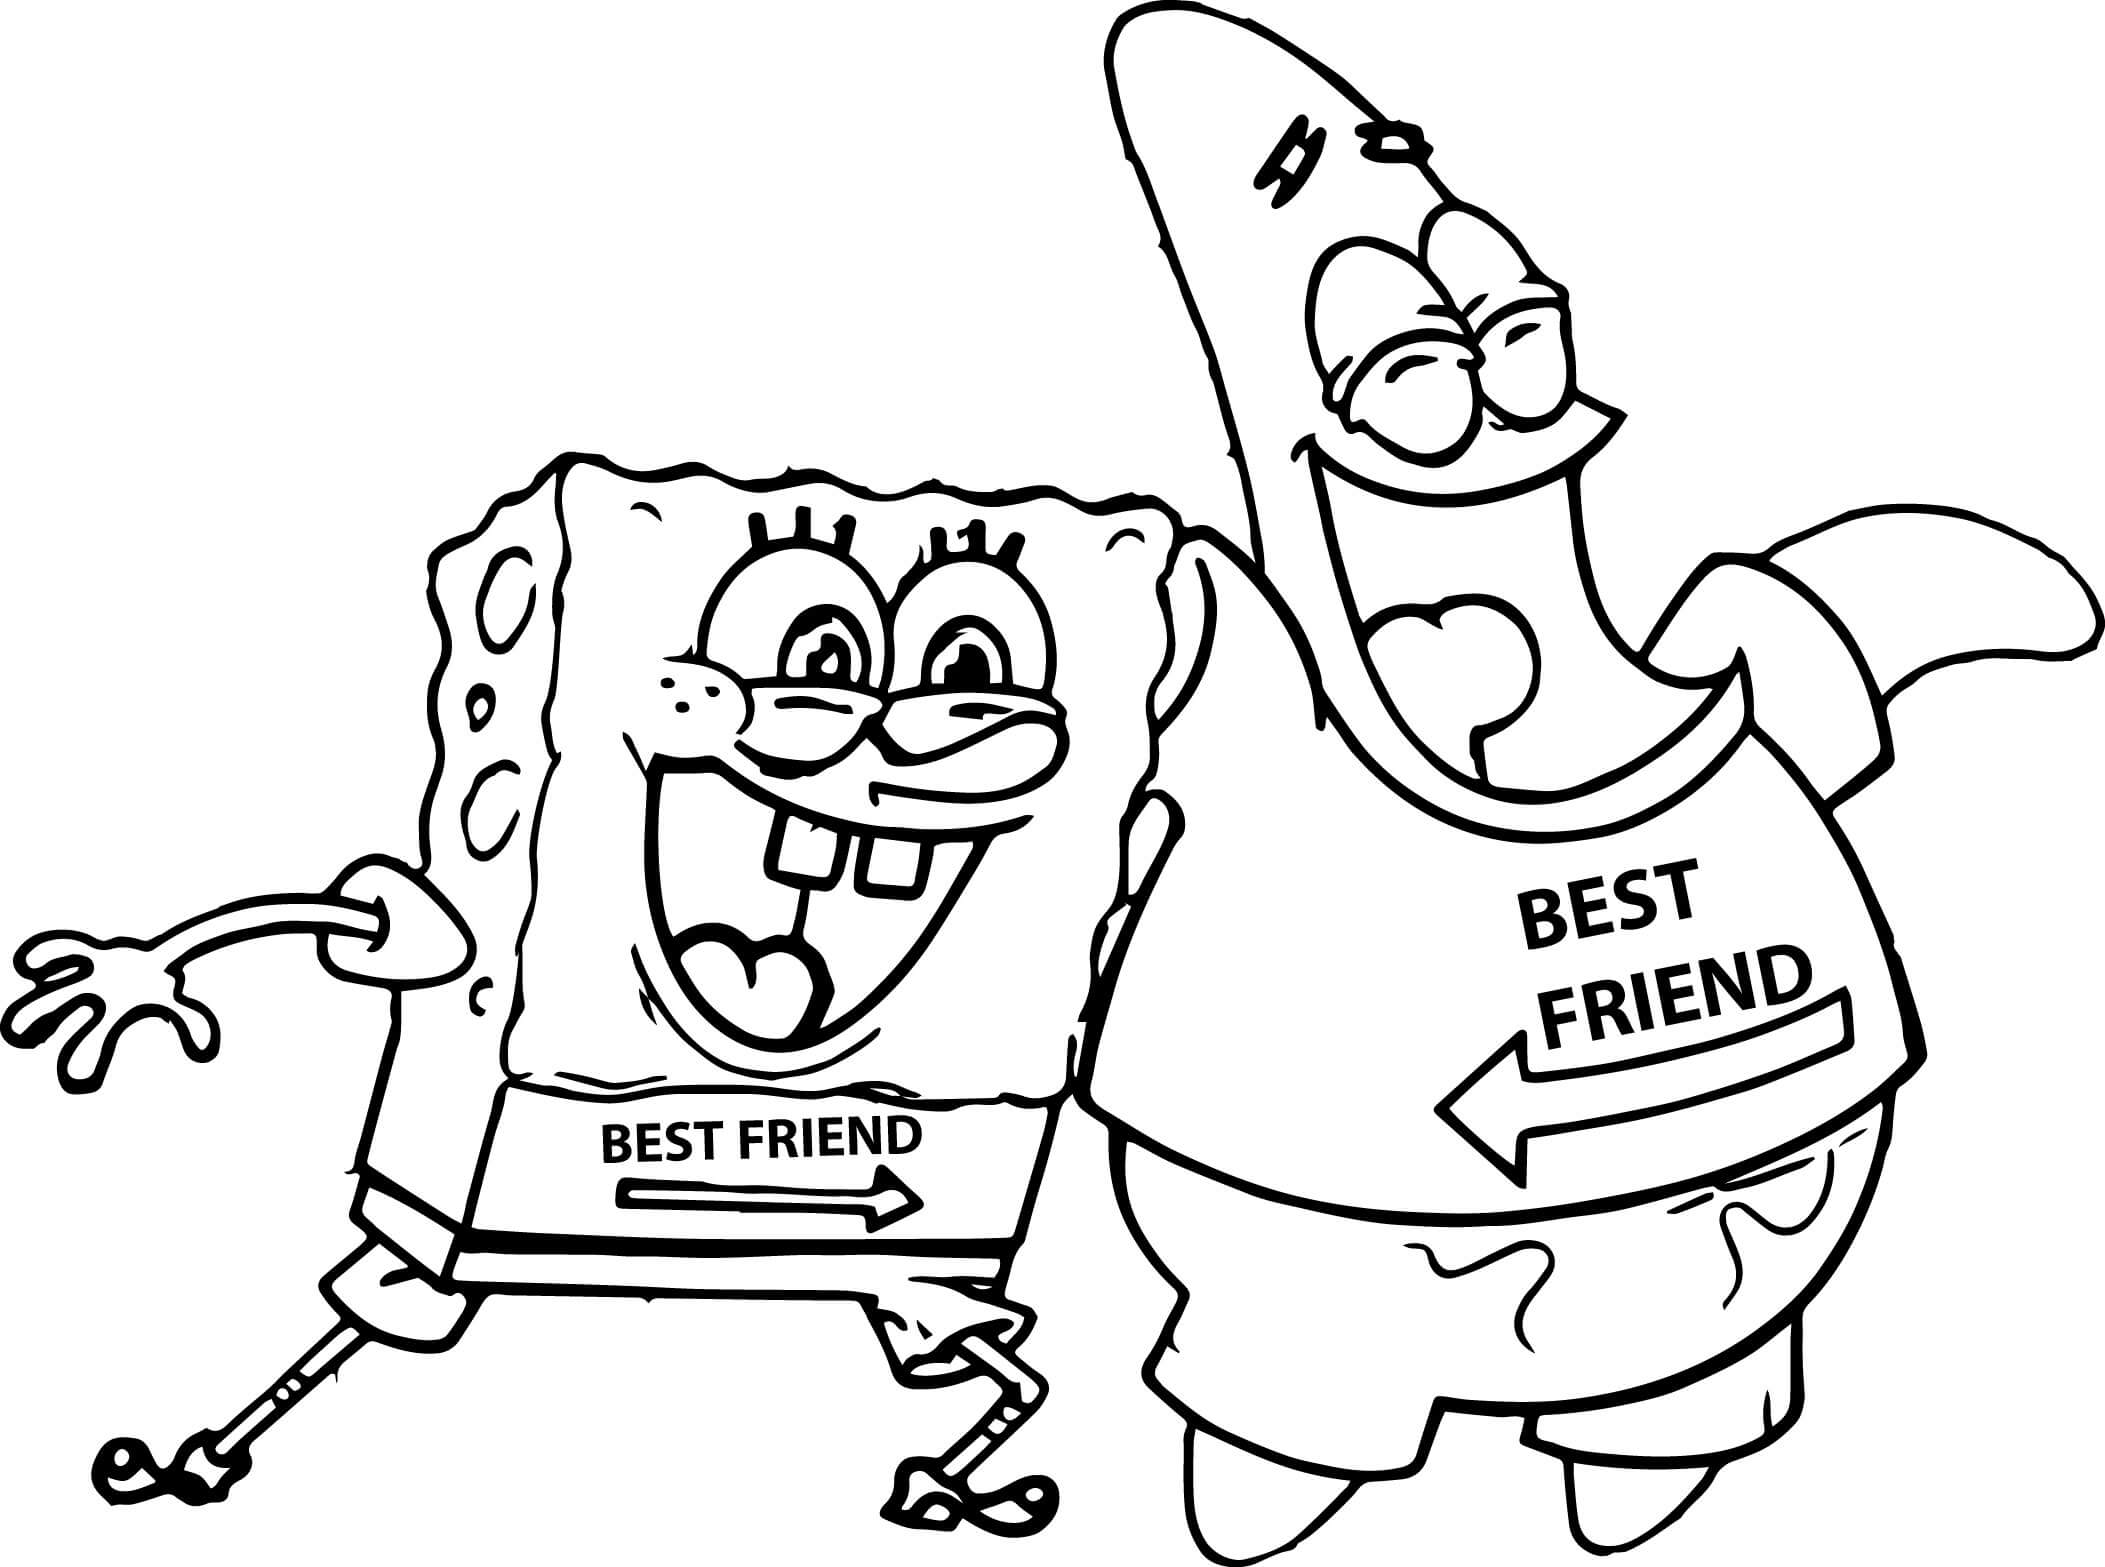 Melhores Amigos Engraçados do Bob Esponja e Patrick para colorir